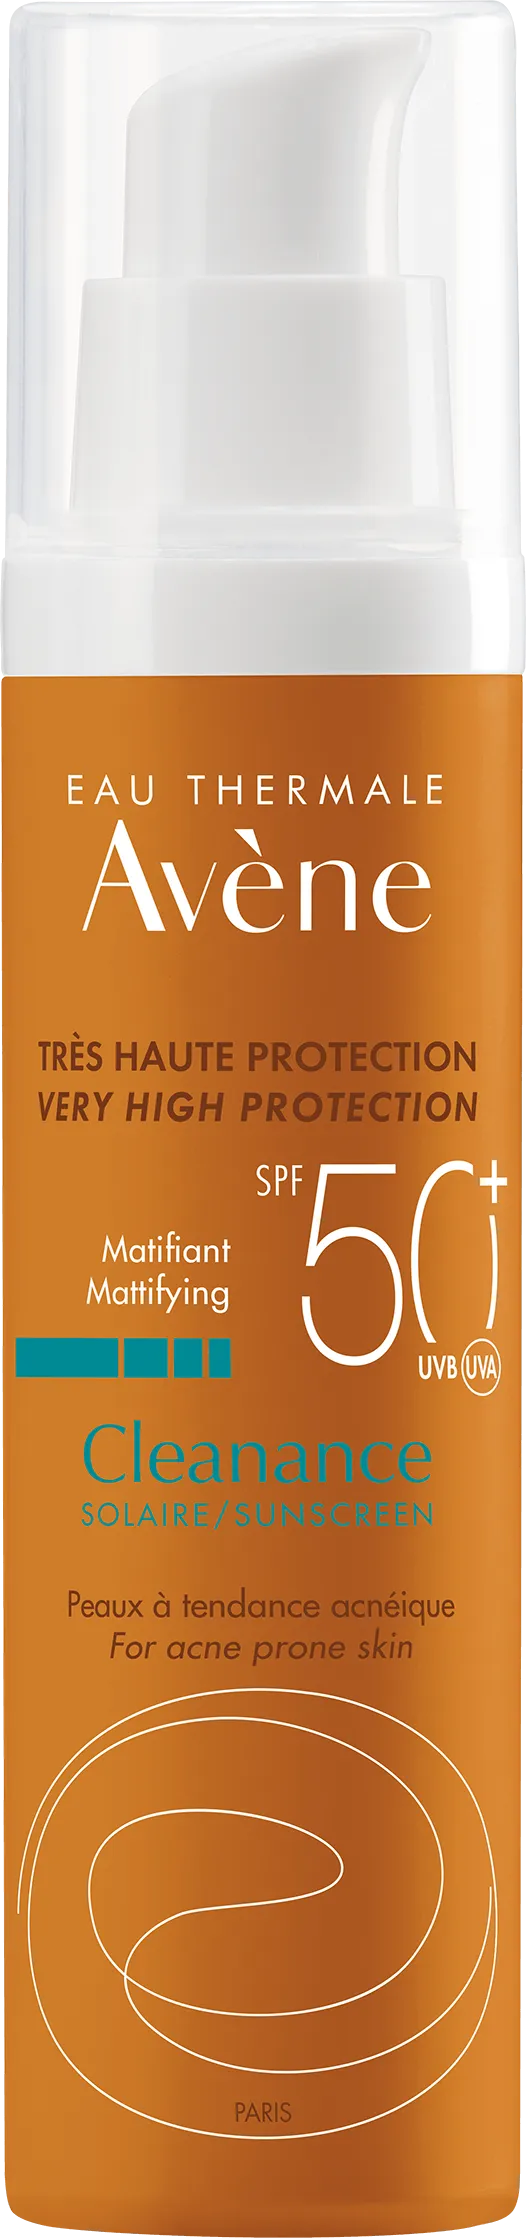 Avene Cleanance Sun, emulsja, bardzo wysoka ochrona przeciwsłoneczna, SPF 50+, 50 ml